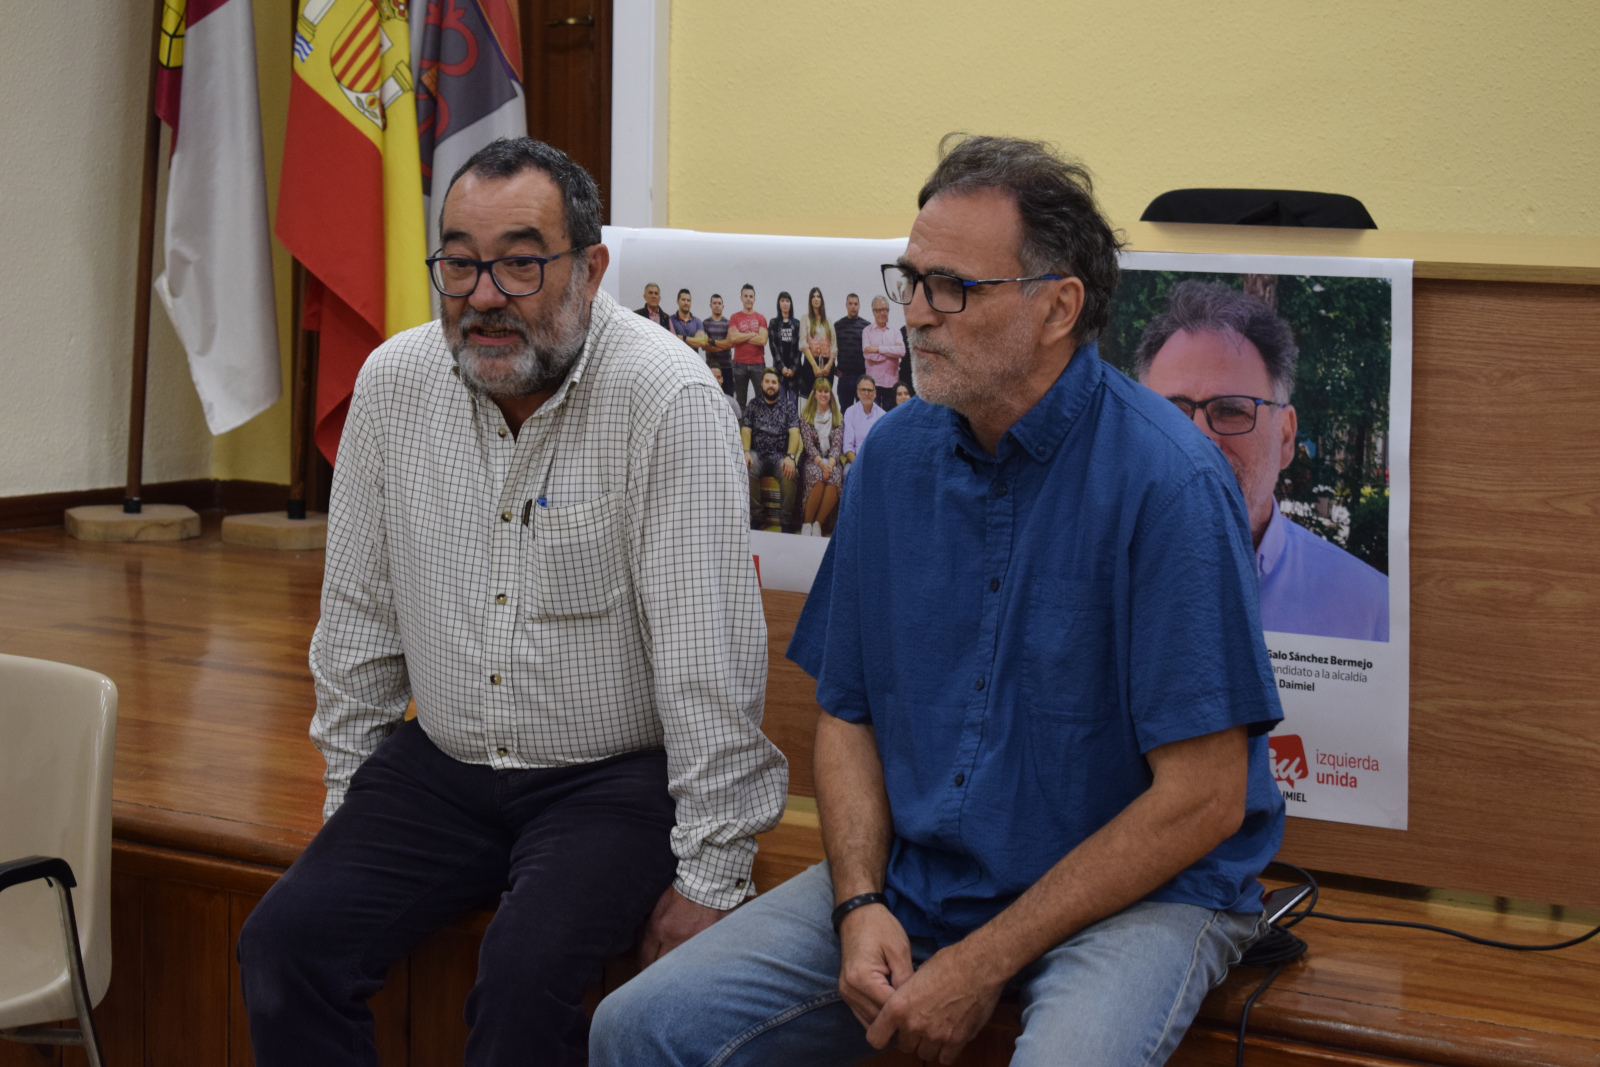 Galo Sánchez-Bermejo y José Manuel Hernández durante la charla